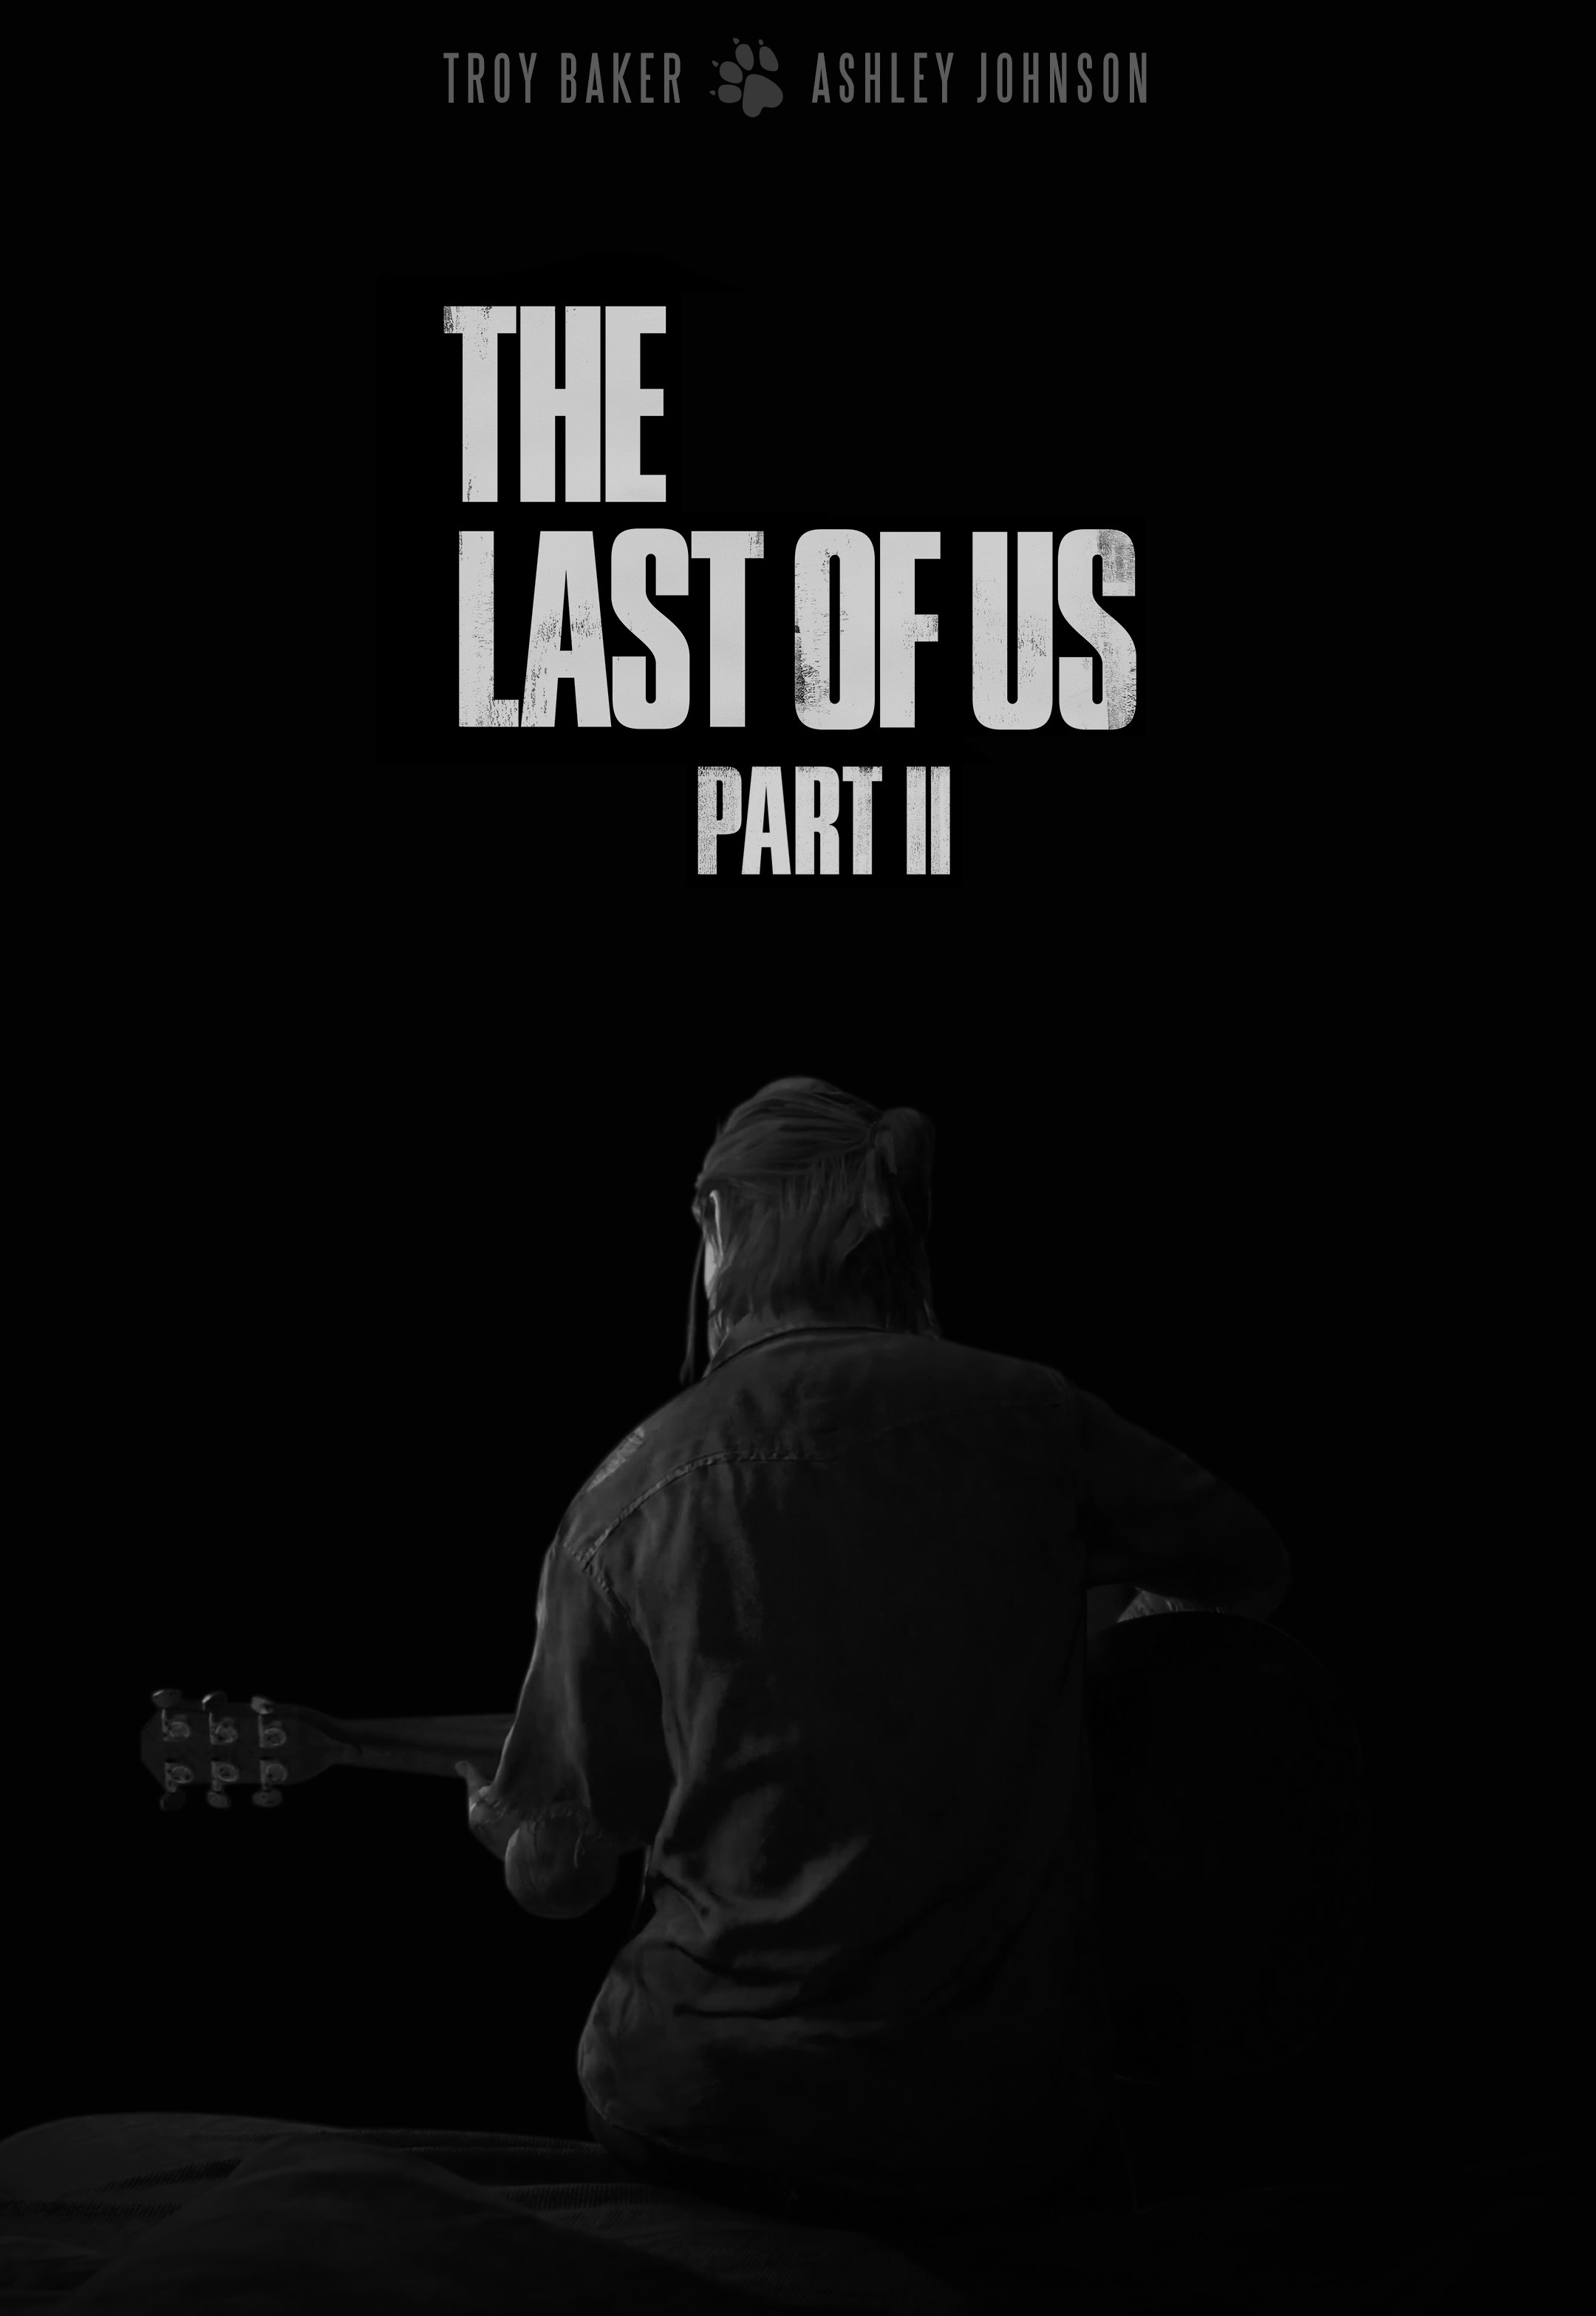 Last of Us 2 Phone Wallpapers - Top Free Last of Us 2 Phone